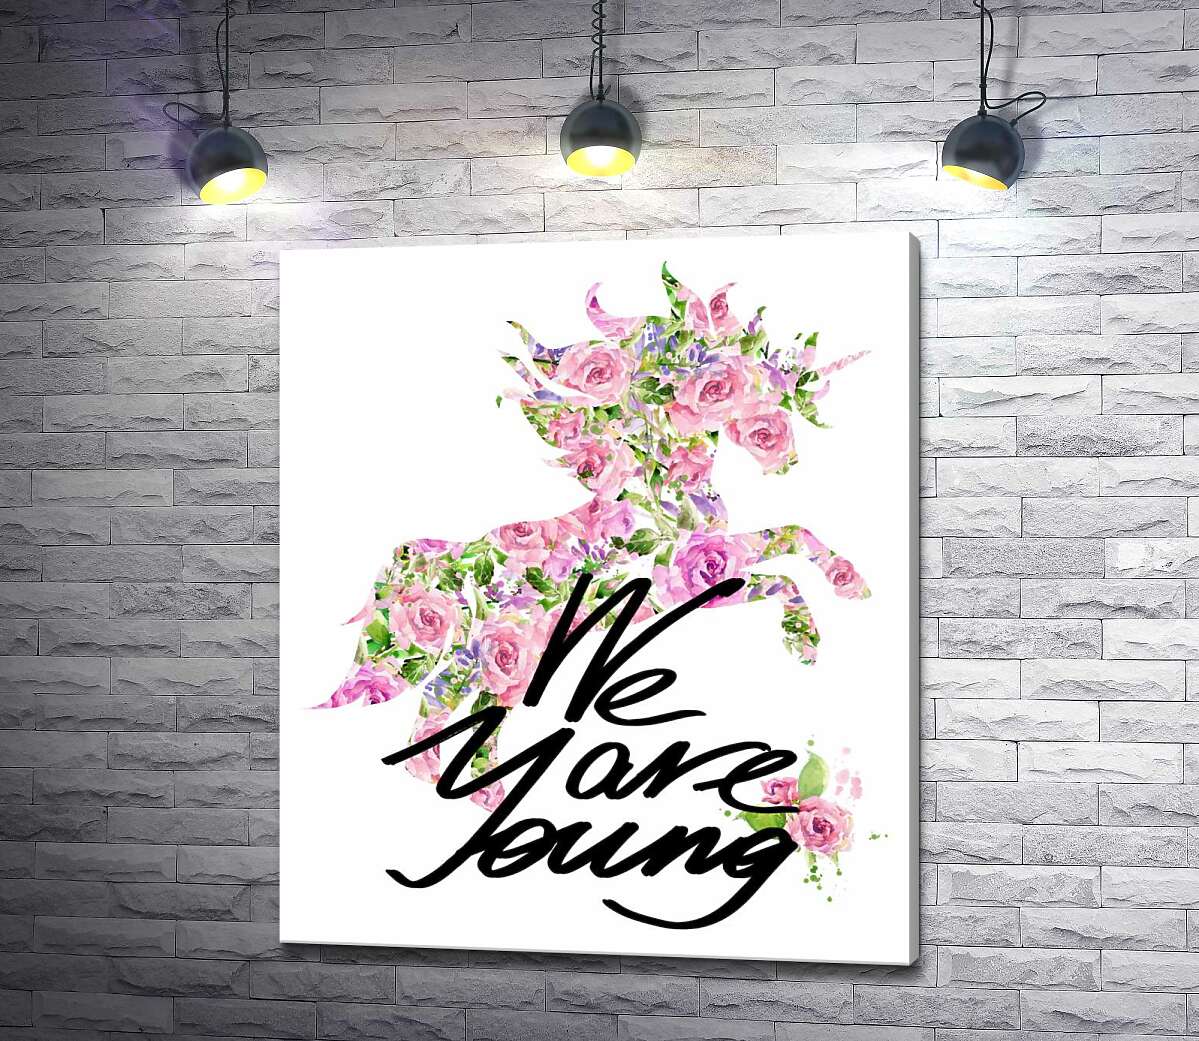 картина Цветочный силуэт единорога за надписью "we are young"